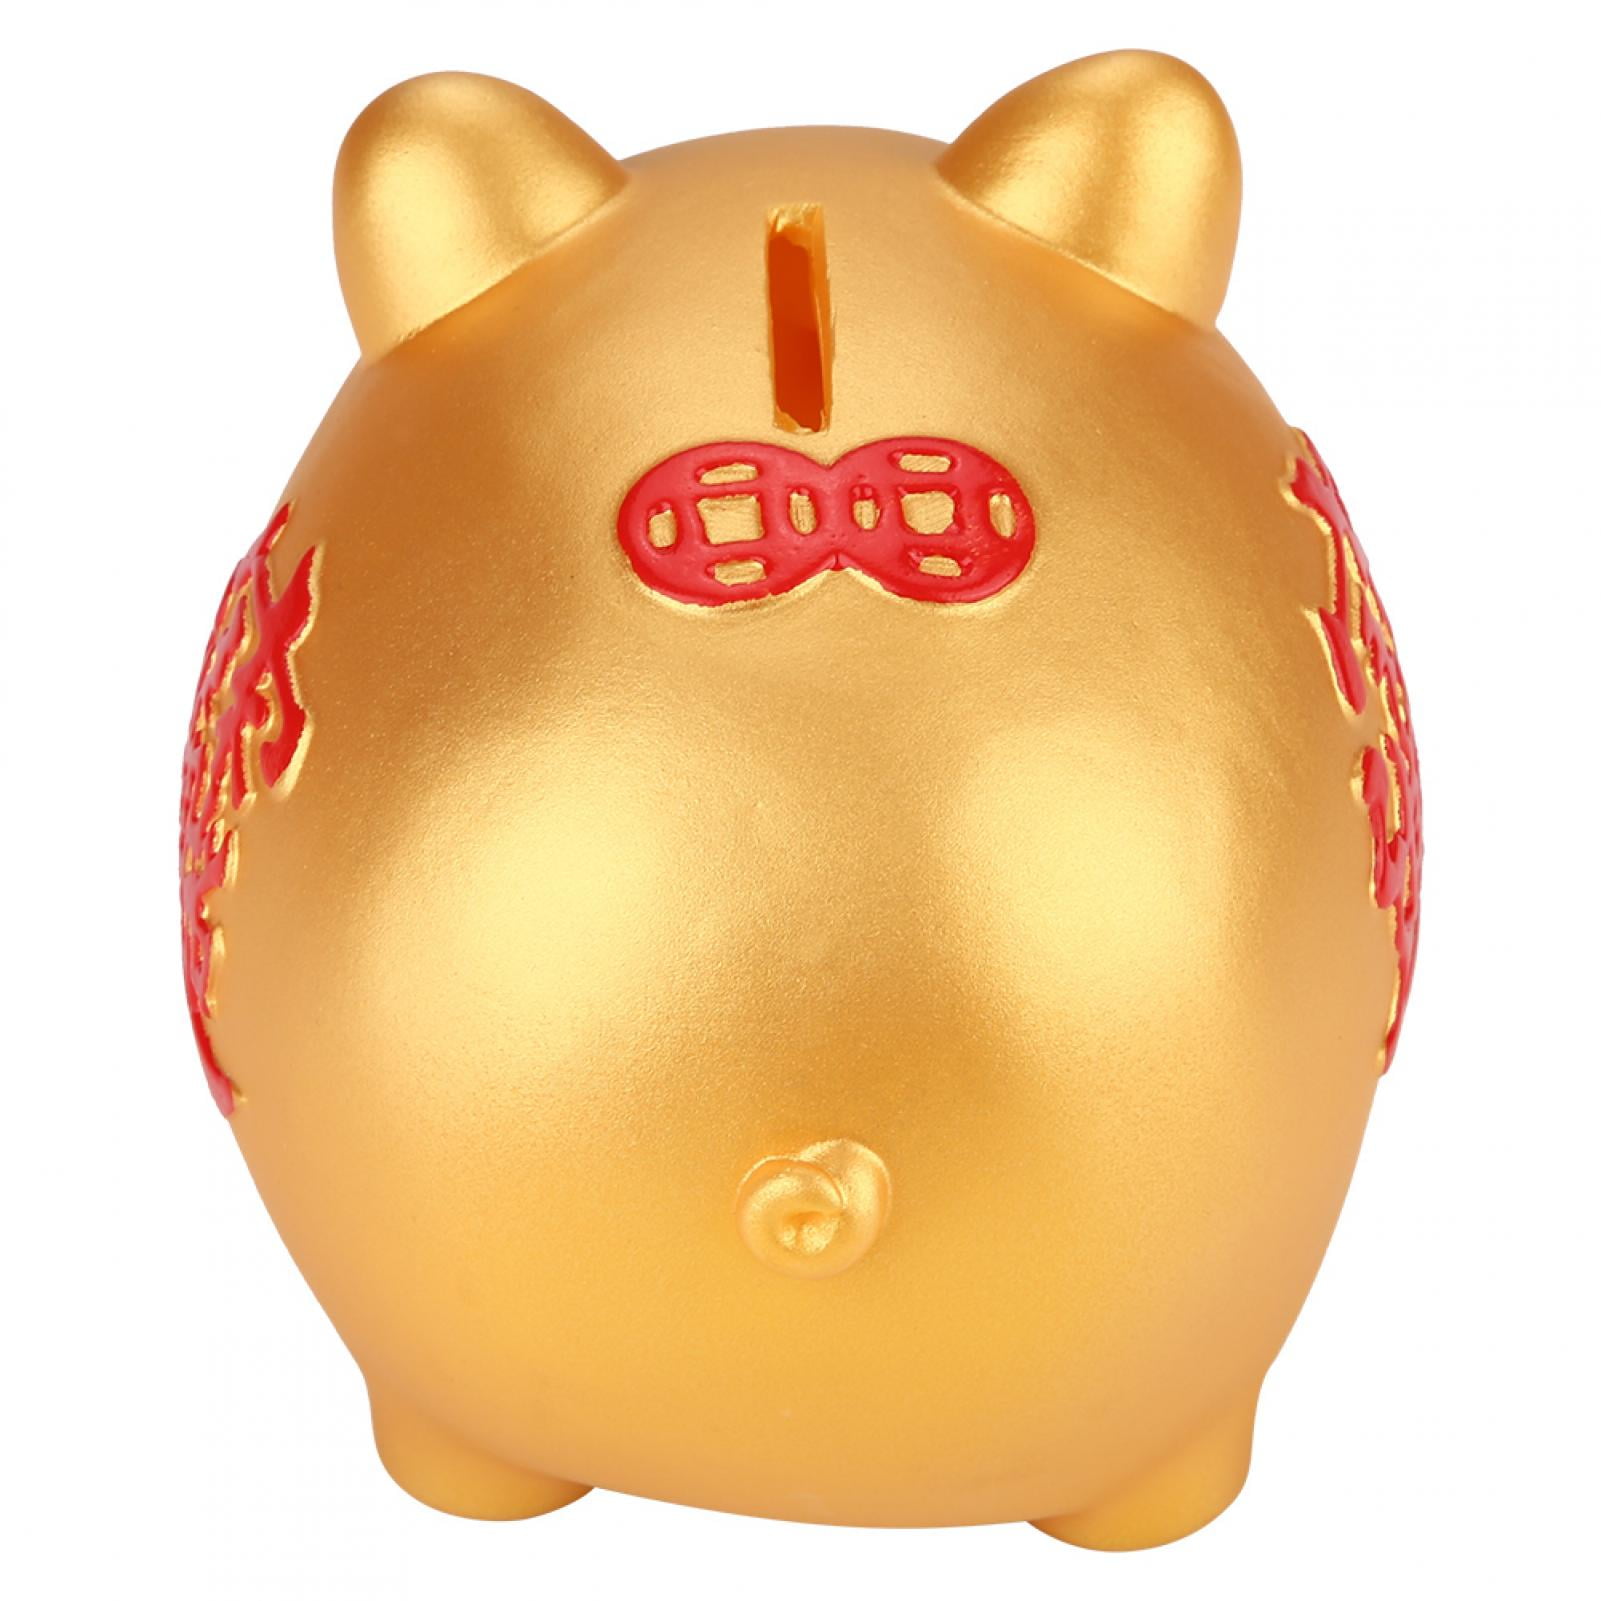 Golden Piggy Bank 